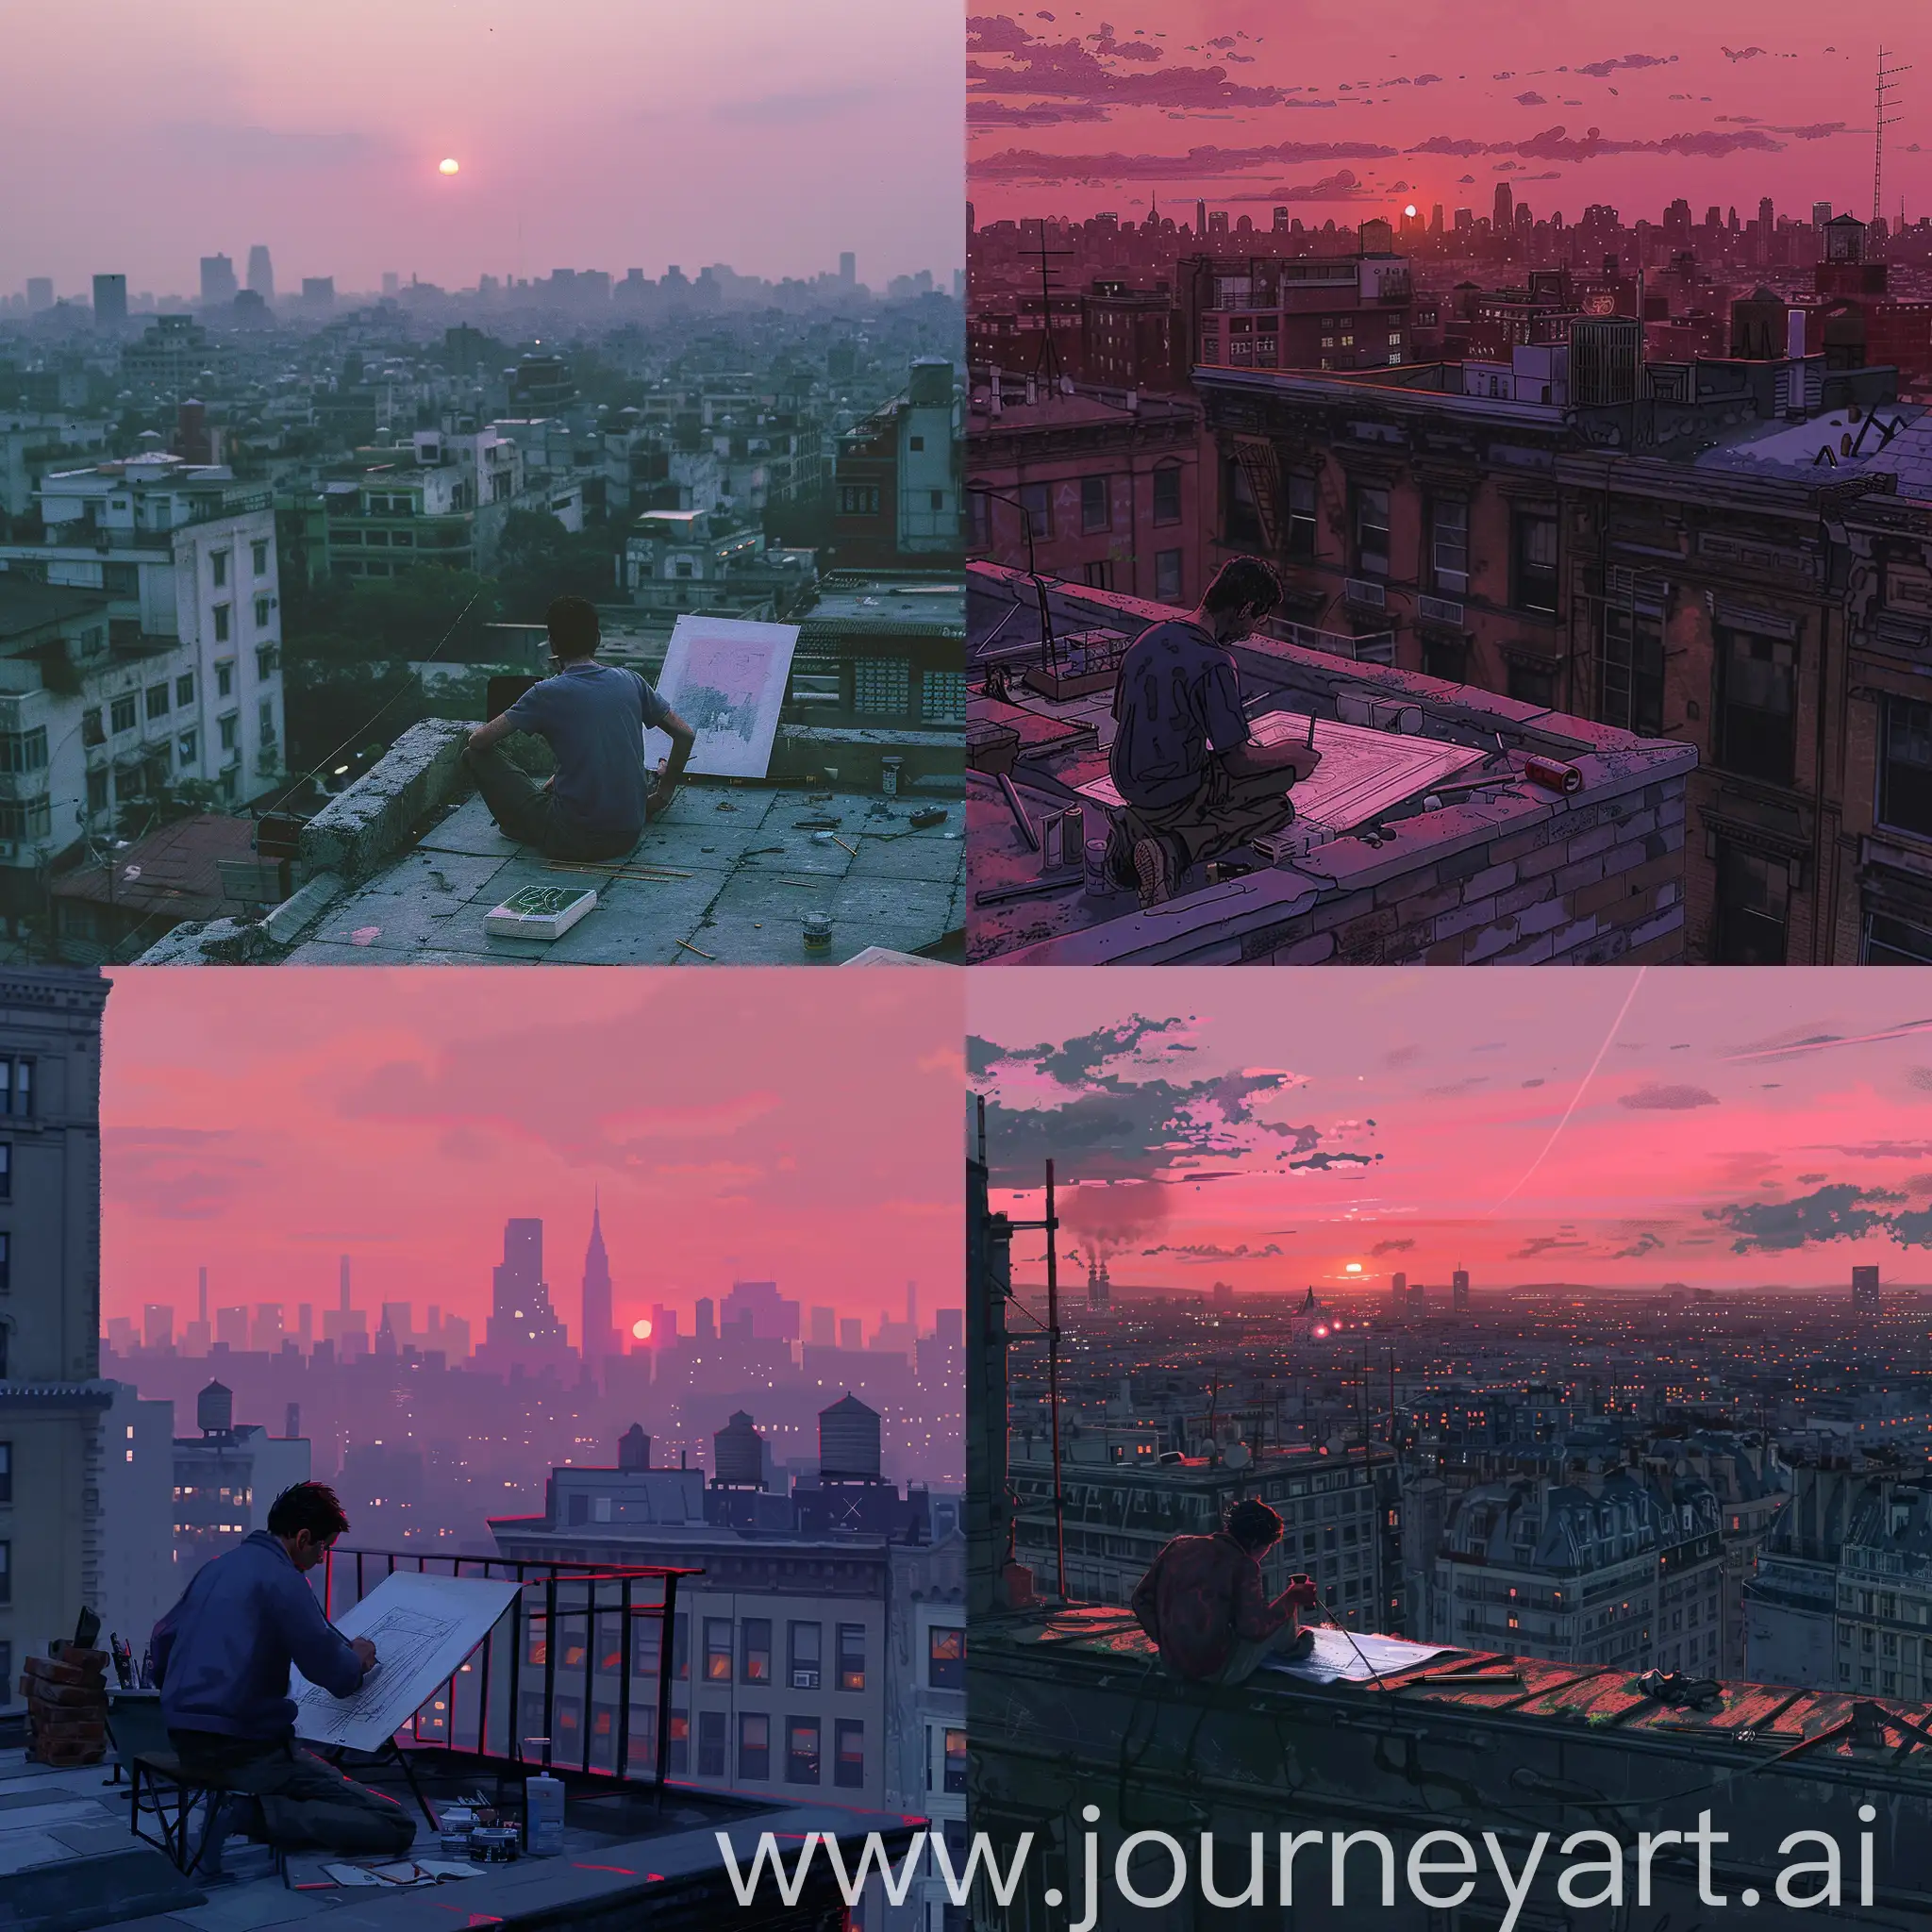 Виден мужчина сидящий на крыше здания и рисующий картину, вдали видны здания мегаполиса, вечер, розовый закат